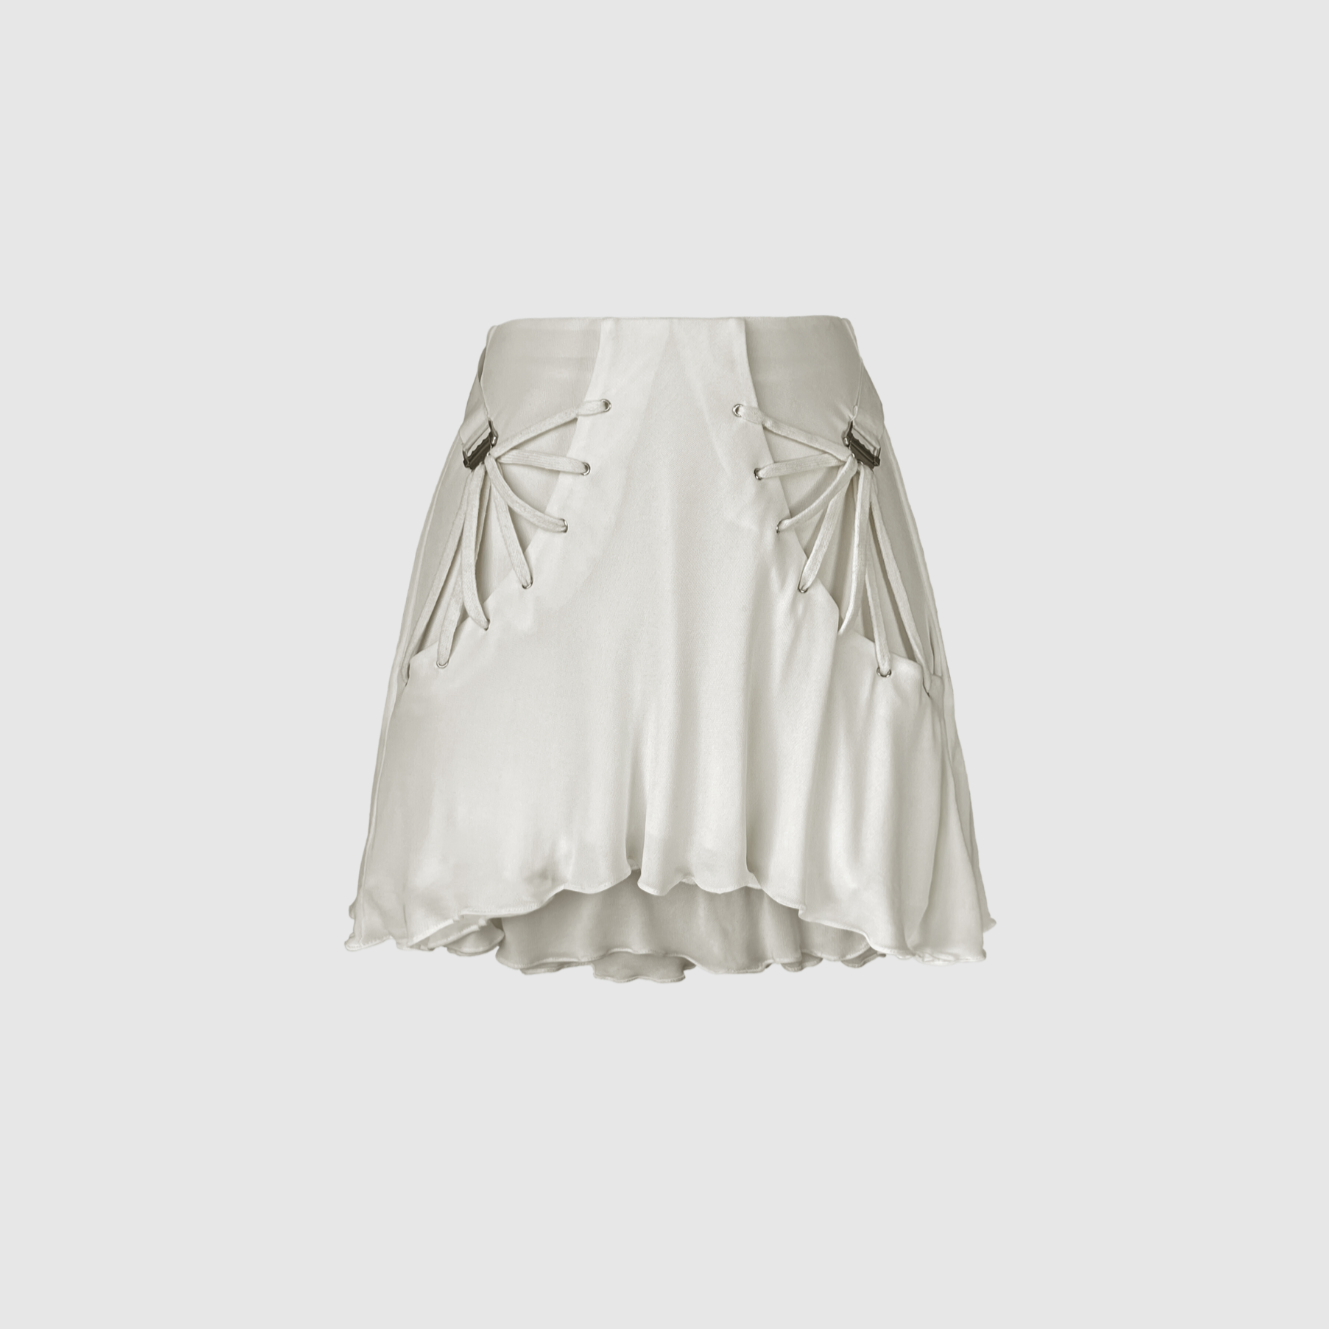 Fan Laced Skirt